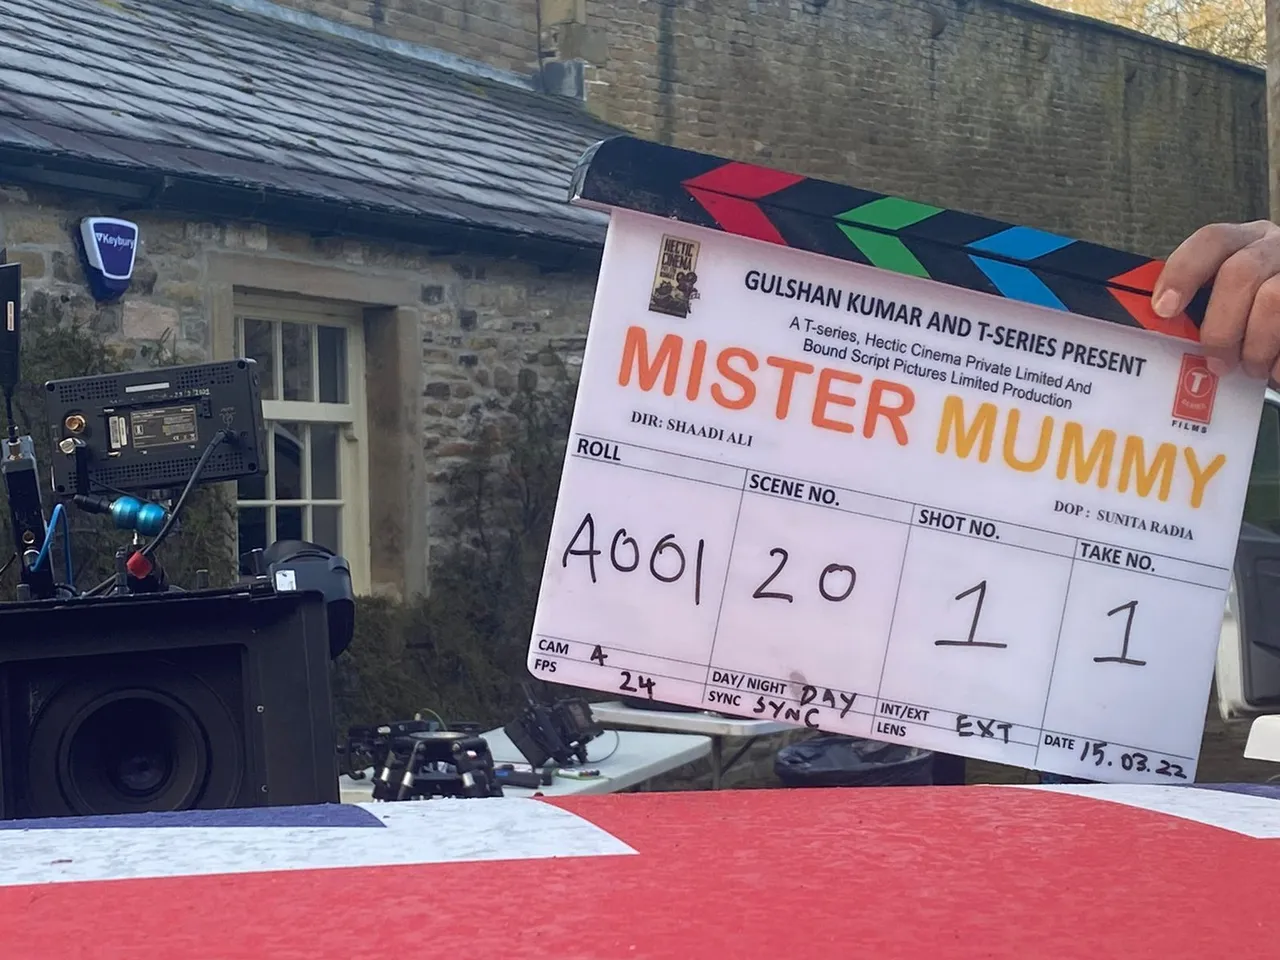 इंग्लैंड में शुरू हुई भूषण कुमार और हैक्टिक सिनेमा प्राइवेट लिमिटेड की फिल्म मिस्टर मम्मी की शूटिंग 